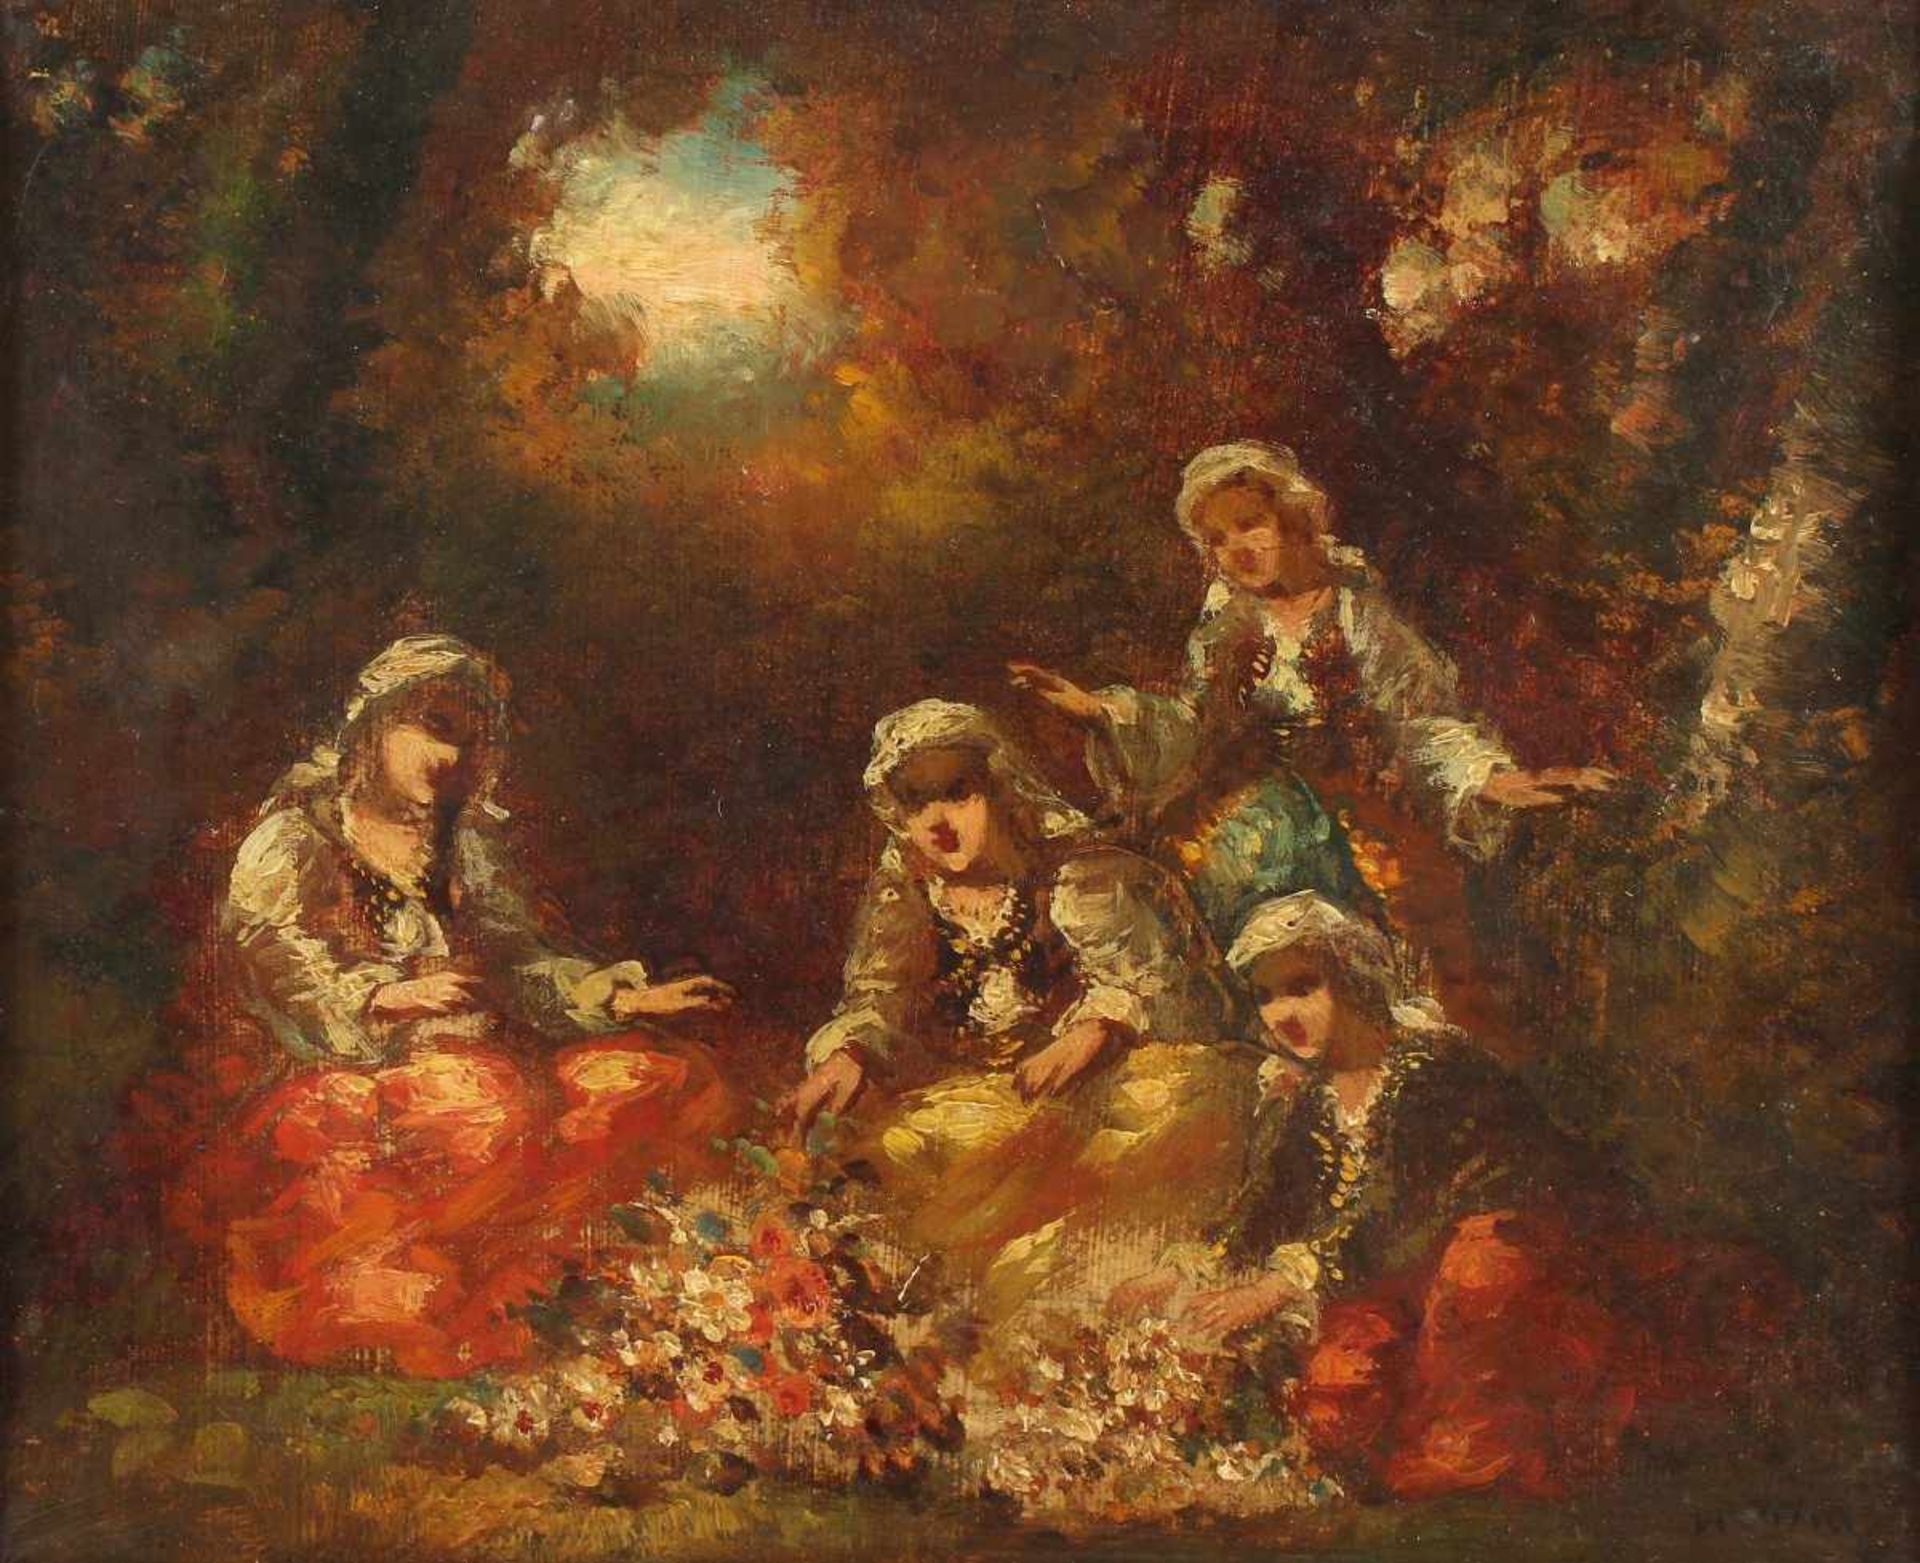 DIAZ DE LA PENA, Narcisse Virgile (1807-1876), zugeschrieben, "Vier Frauen im Park", Öl/Lwd., 22,5 x